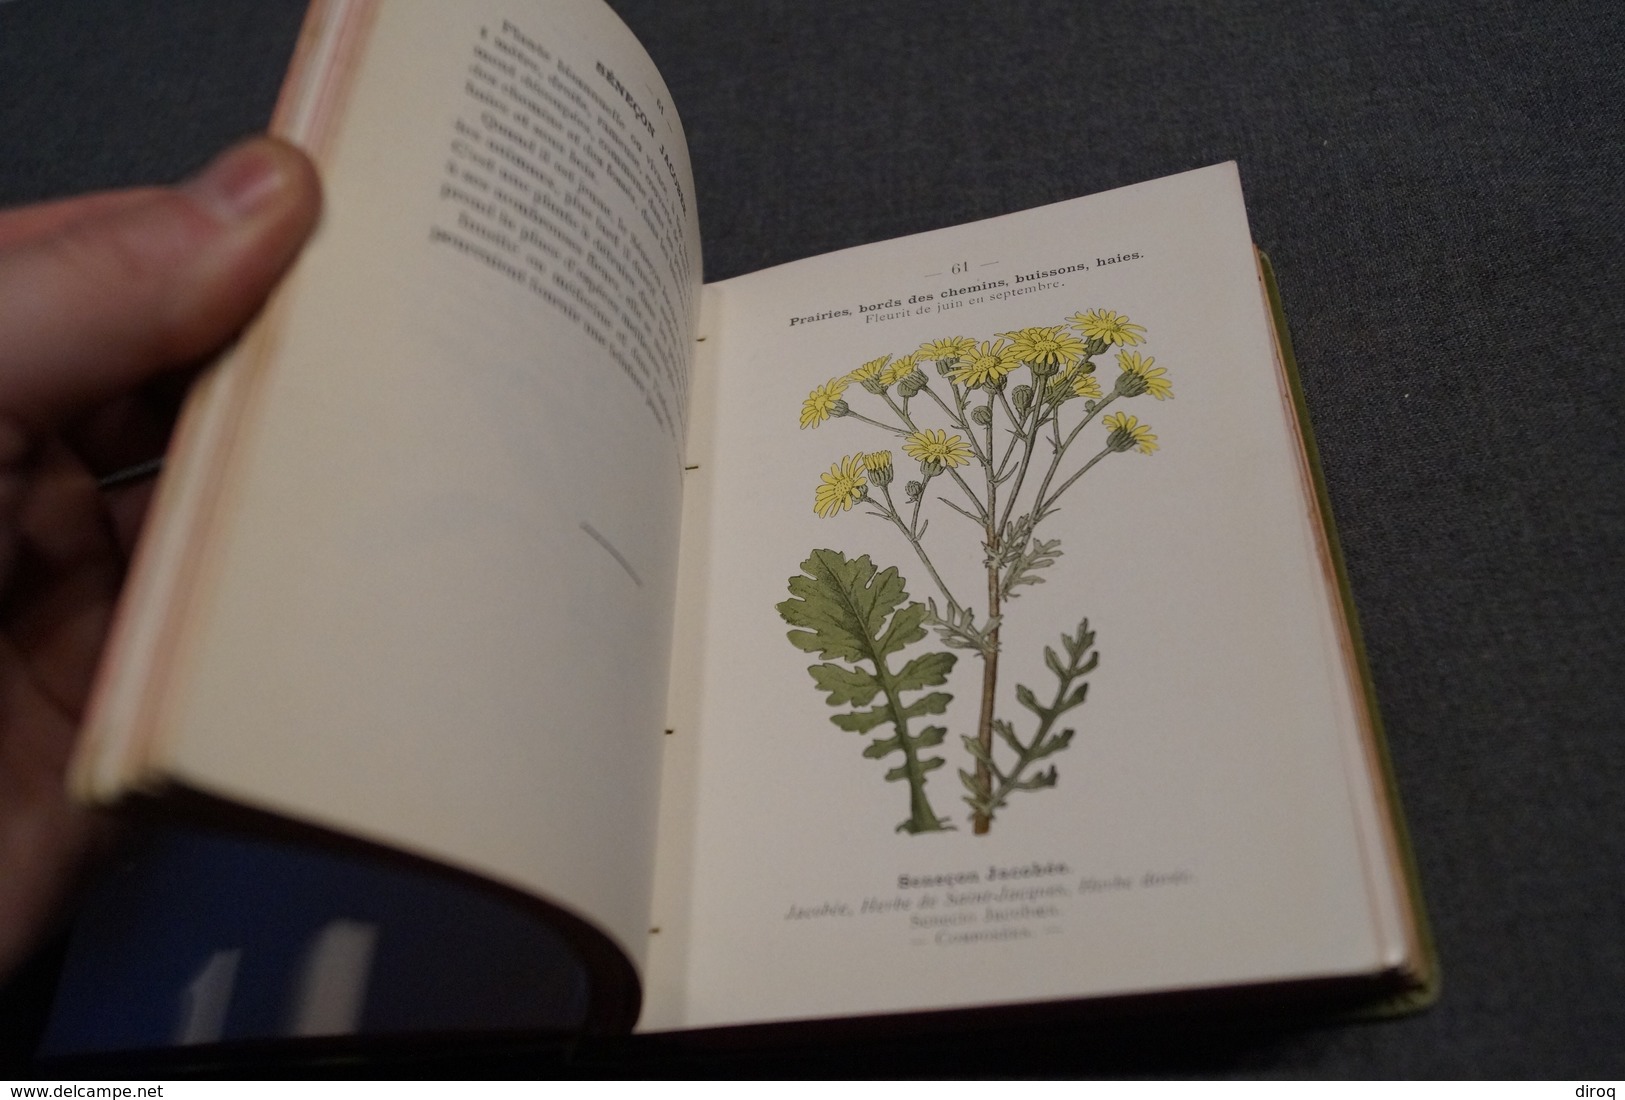 2 ouvrages Atlas de poche des plantes,R.Siélain,série II et III,1906-1907 + herbier d'époque,16 Cm. sur 11,5 Cm.